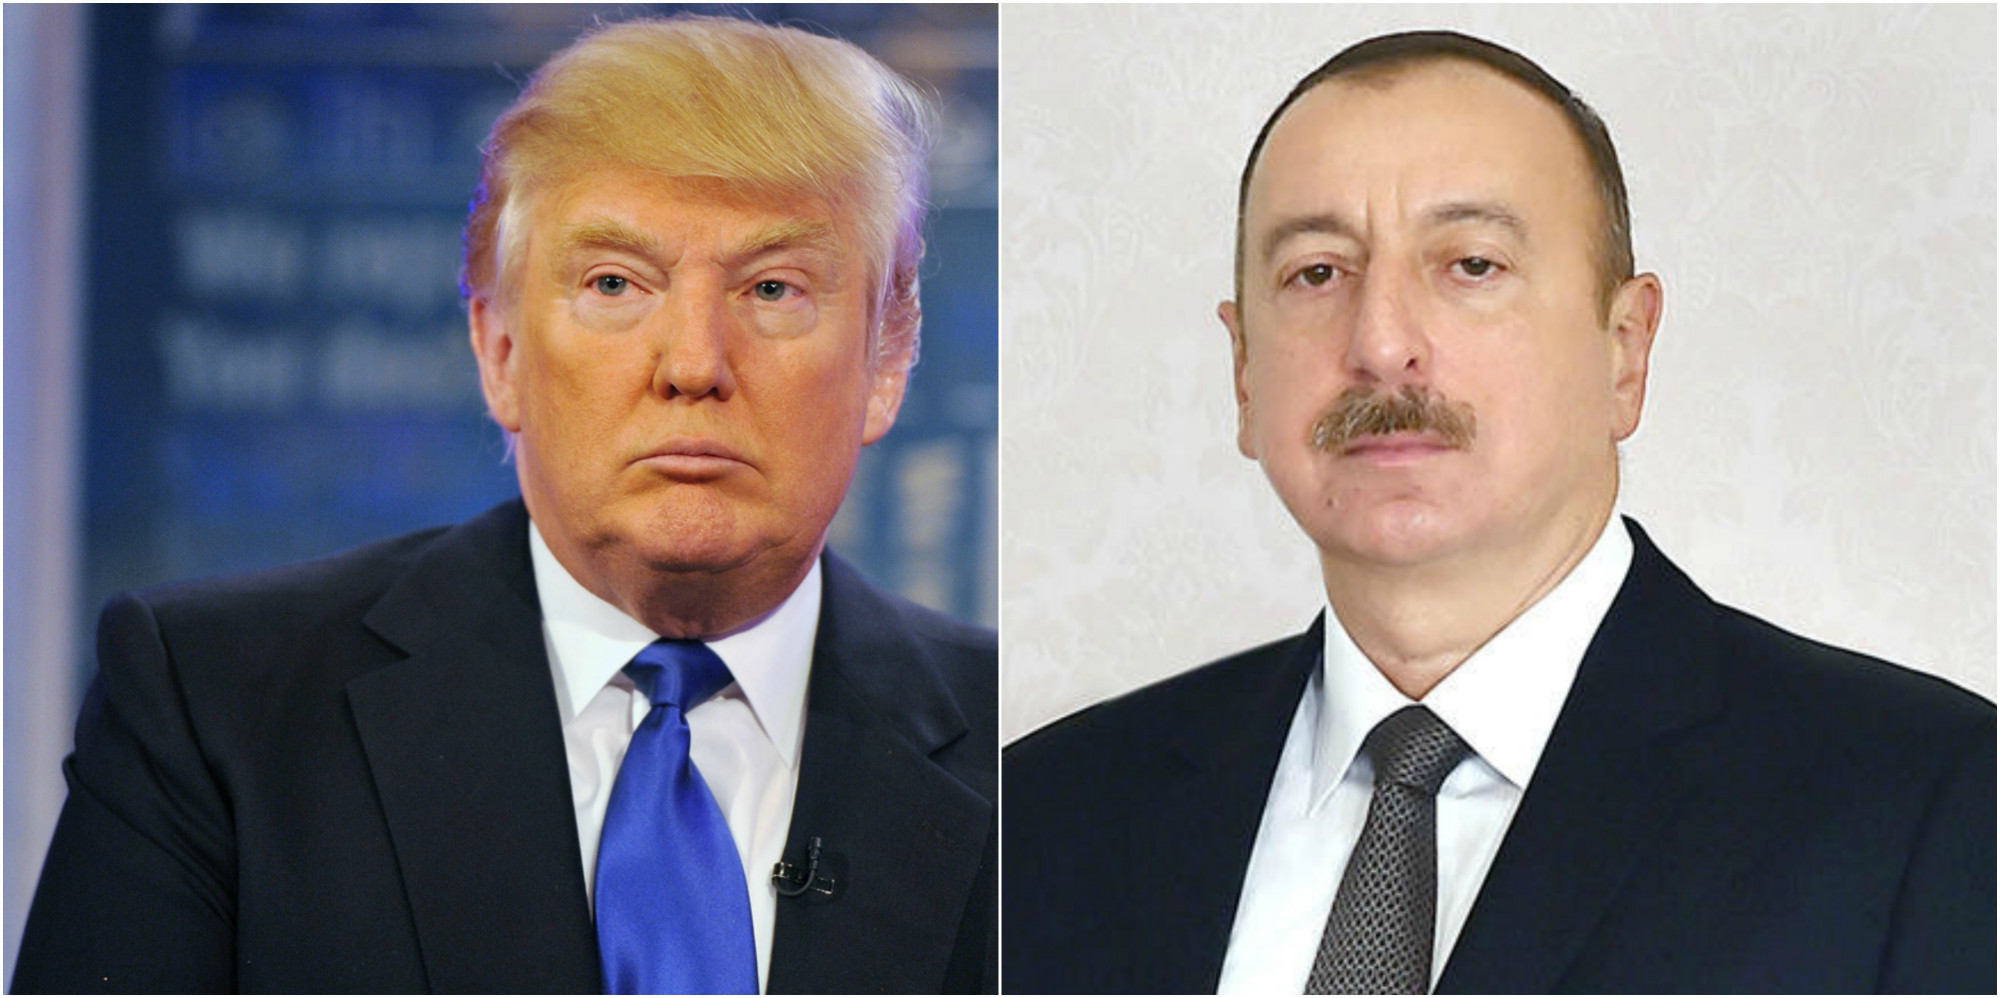 Встреча президентов Дональда Трампа и Ильхама Алиева практически обговорена